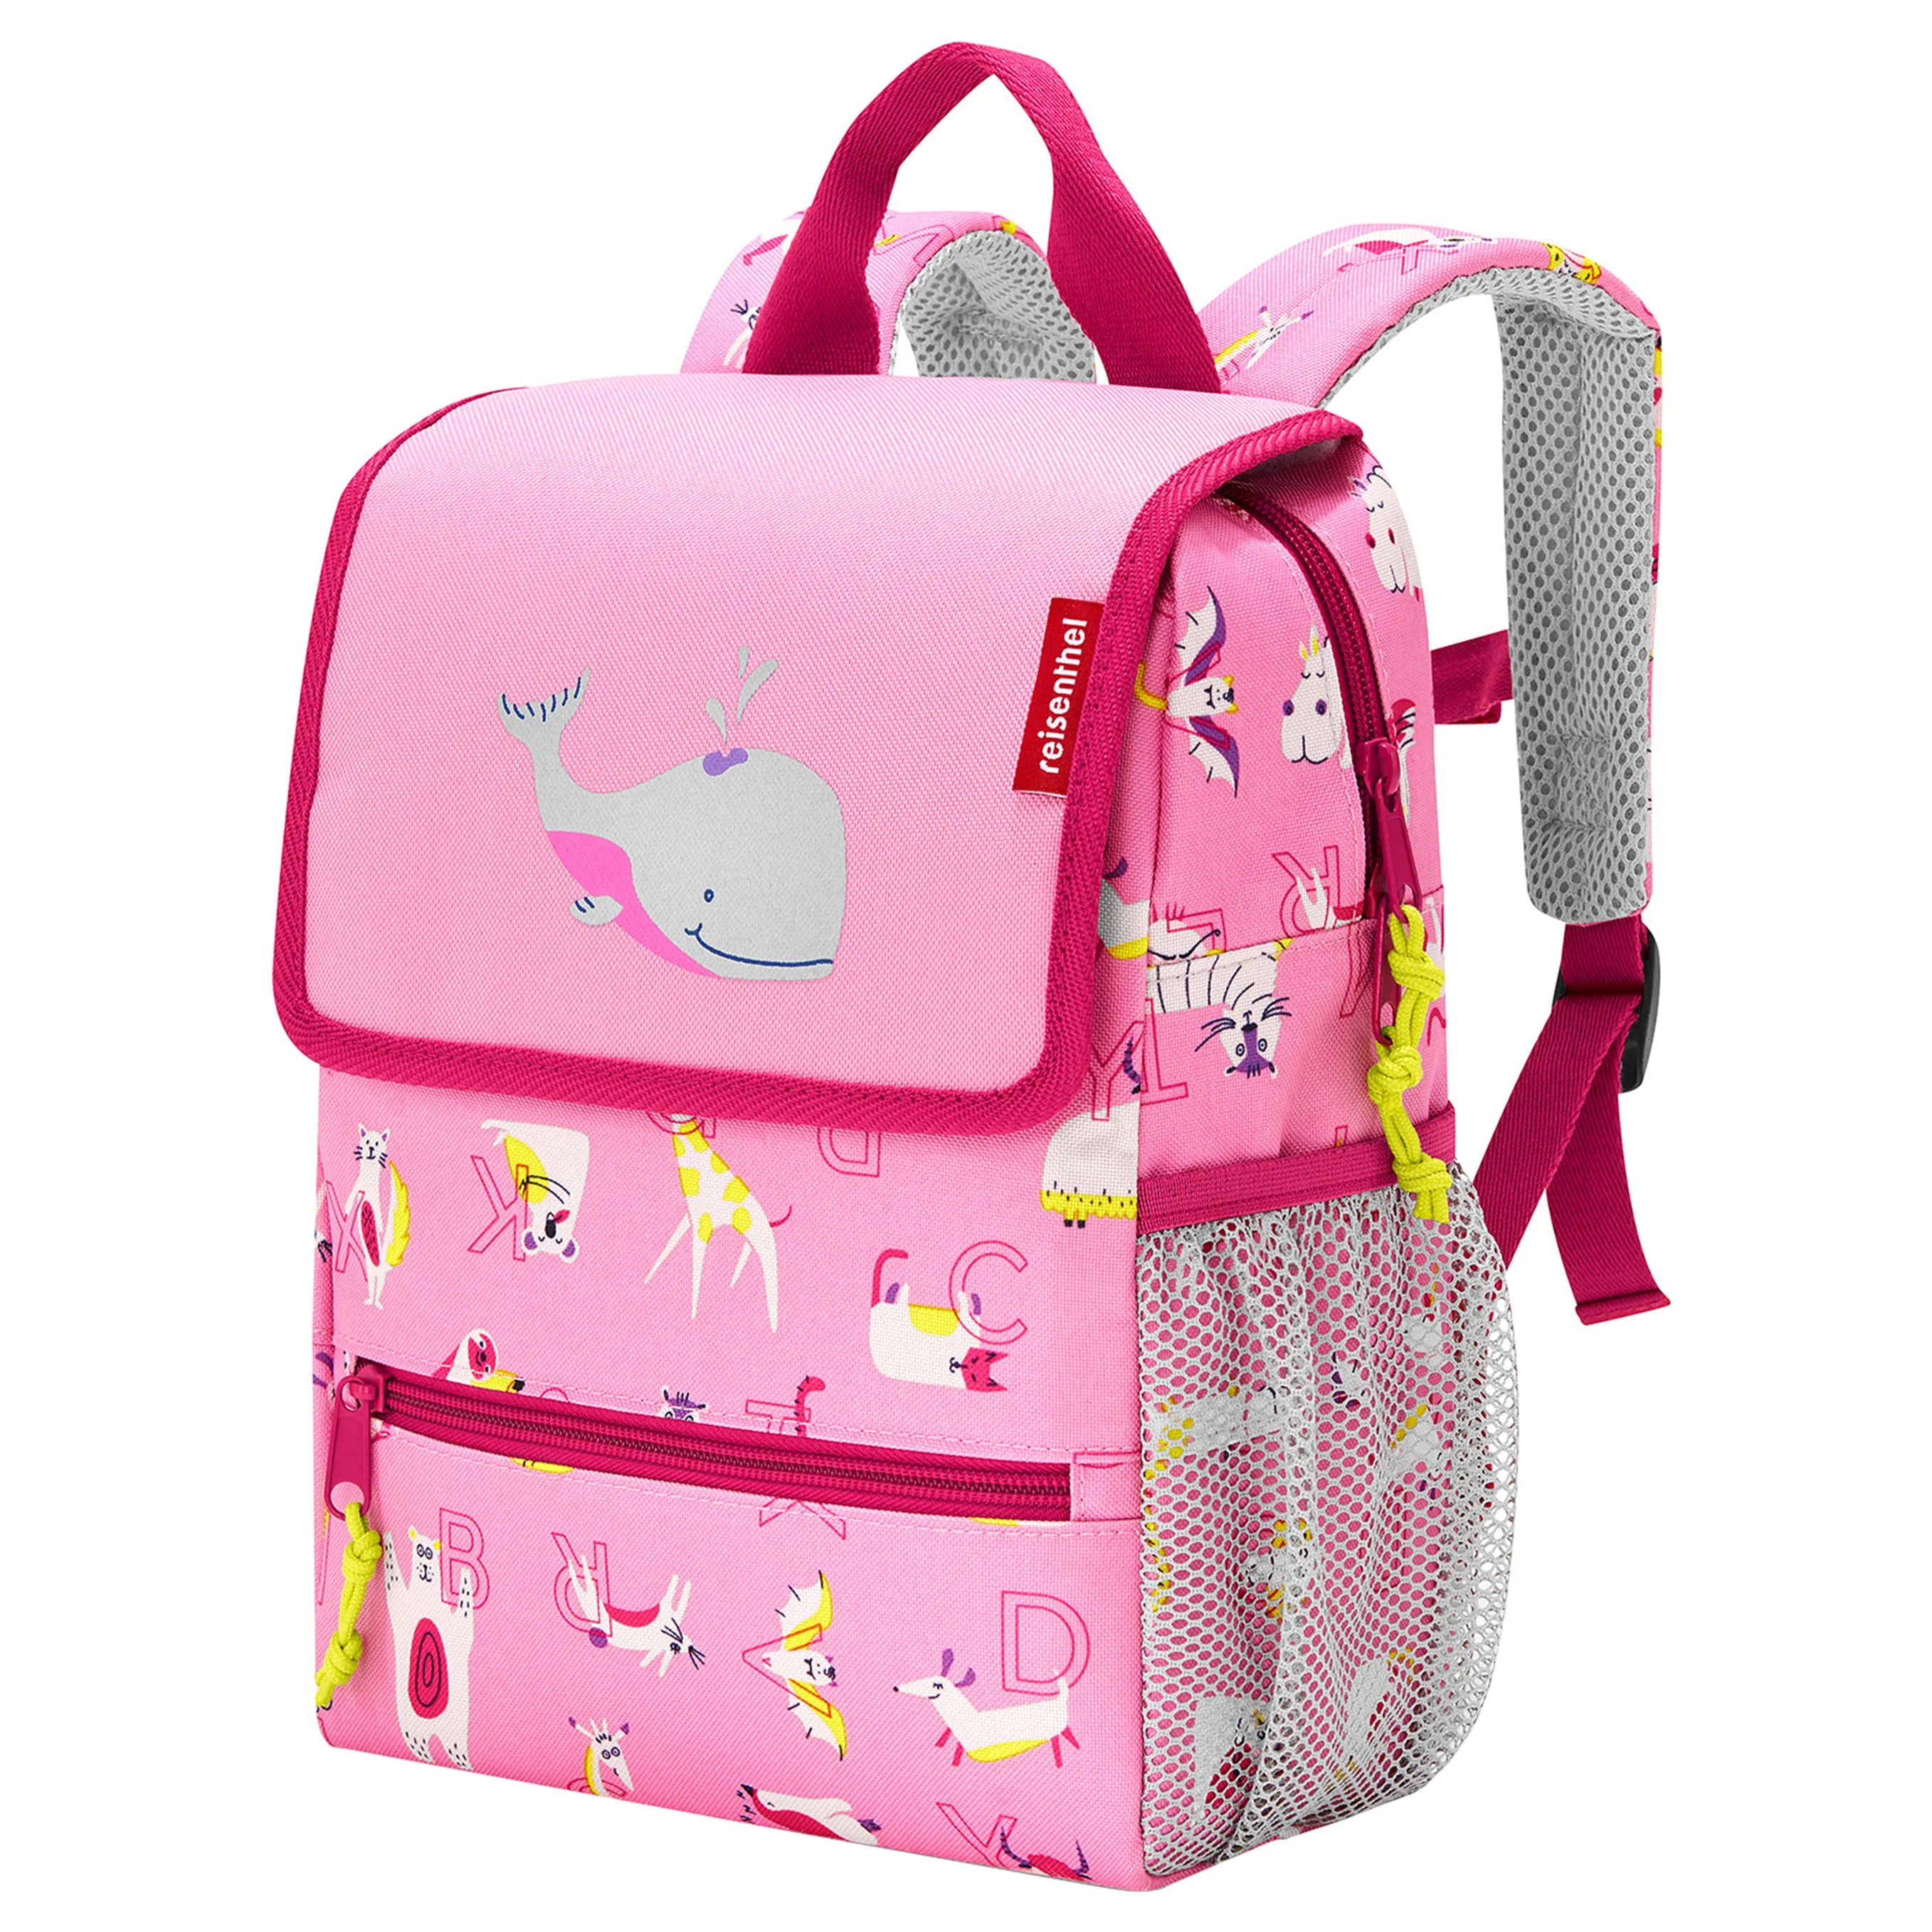 Reisenthel Kids Backpack Rucksack 28 cm - friends pink